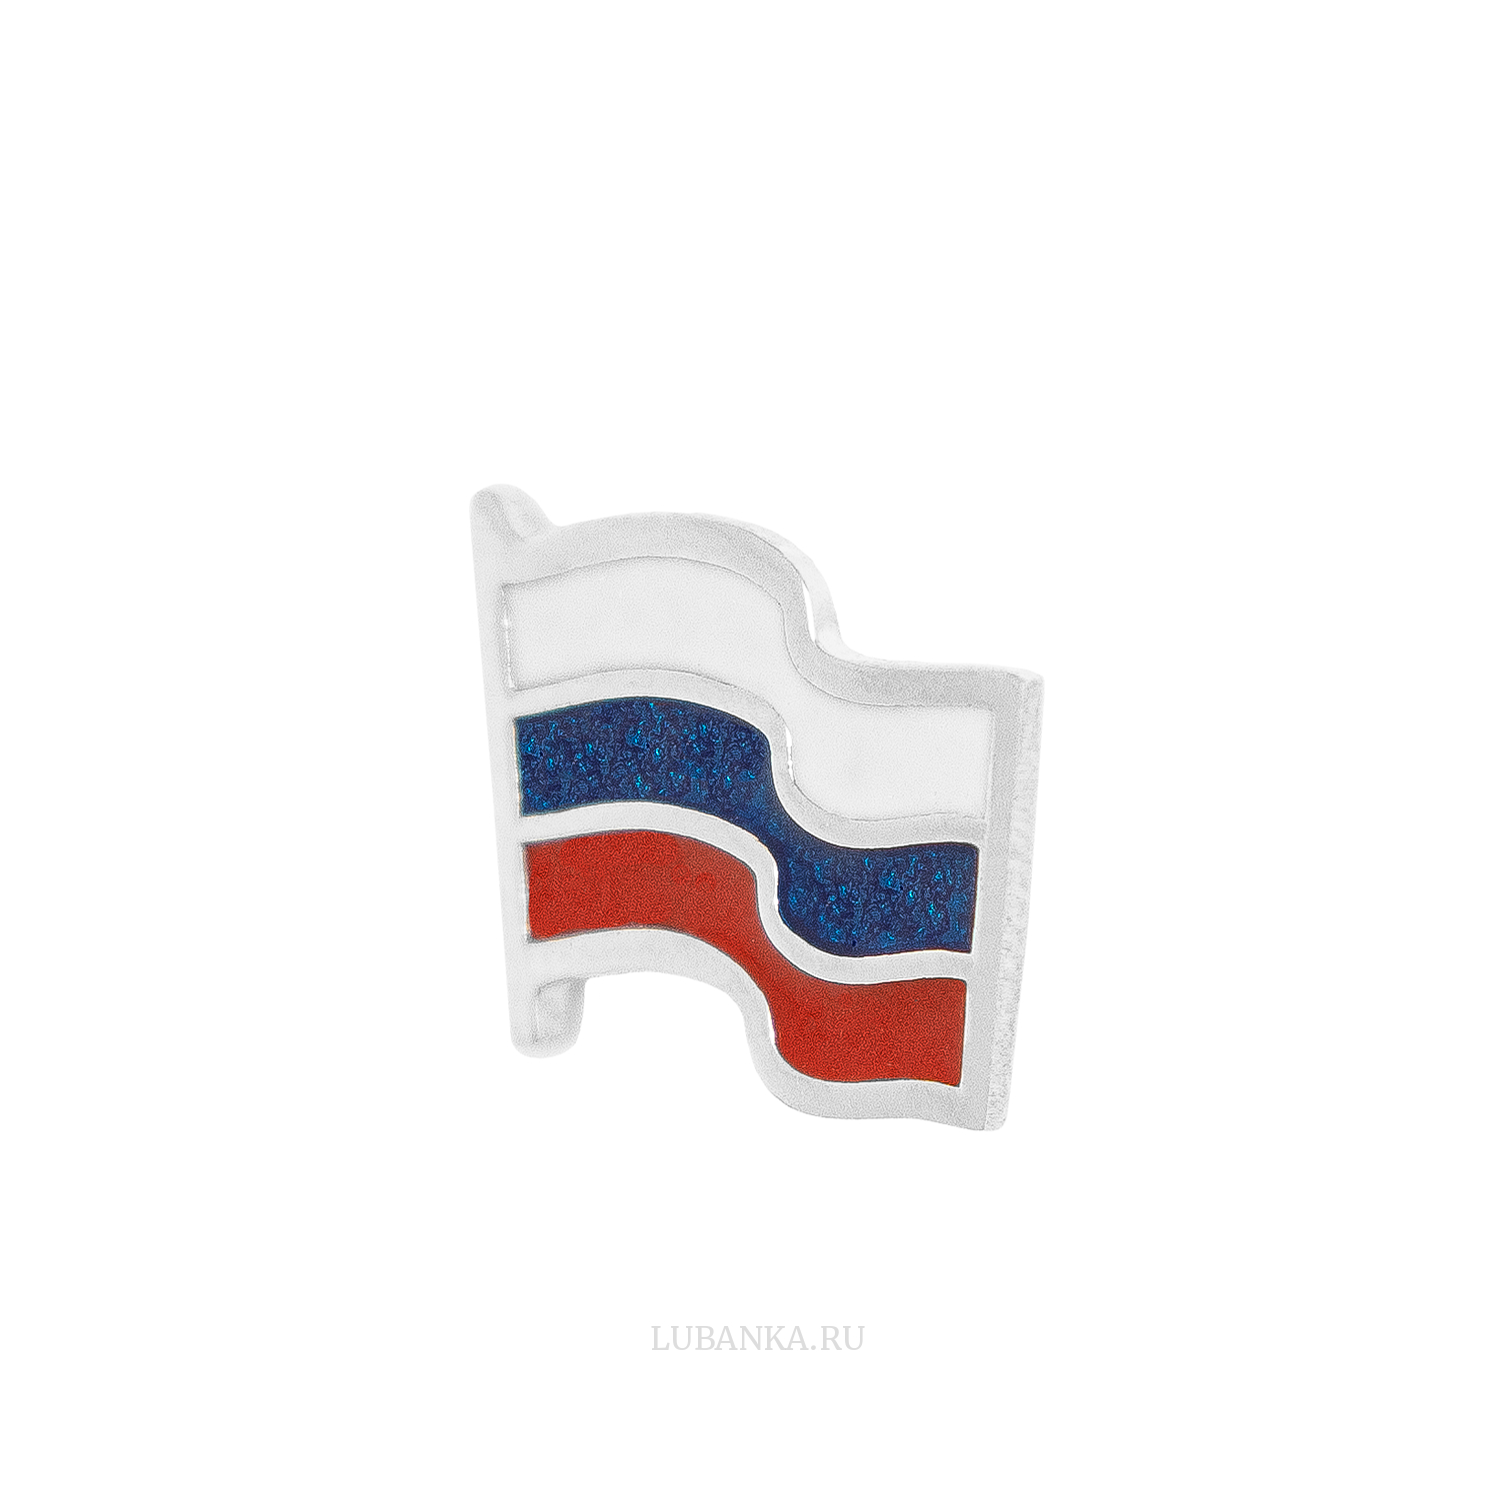 Значок Флаг России серебро